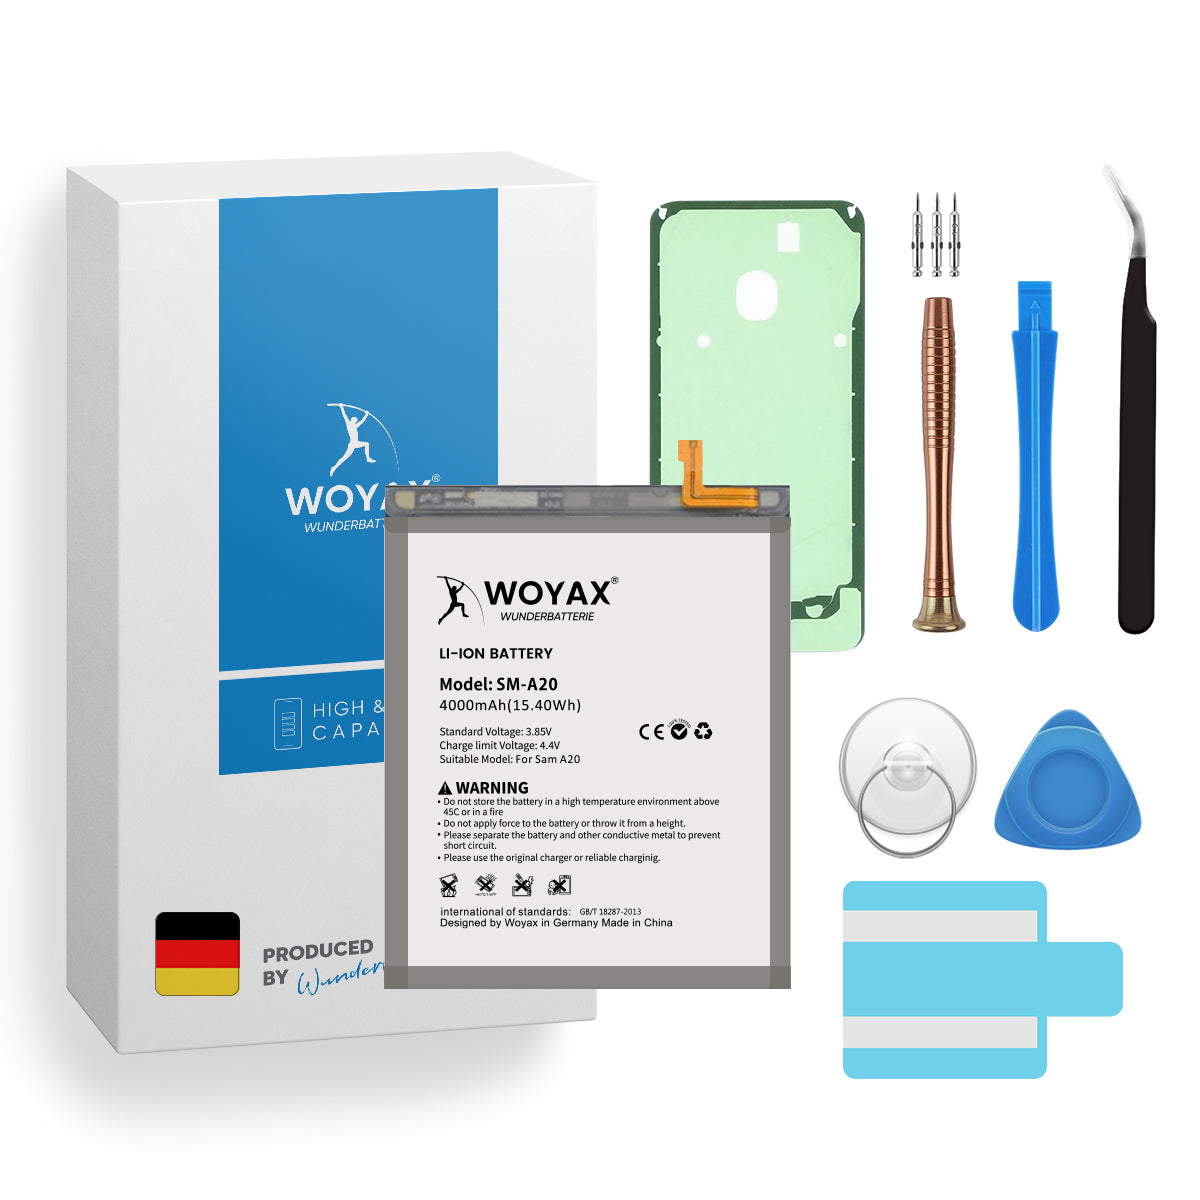 WOYAX Wunderbatterie Akku für 3.85 Volt, Li-Ionen Handy-Akku, Galaxy A20 EB-BA505ABU 4000mAh / Samsung